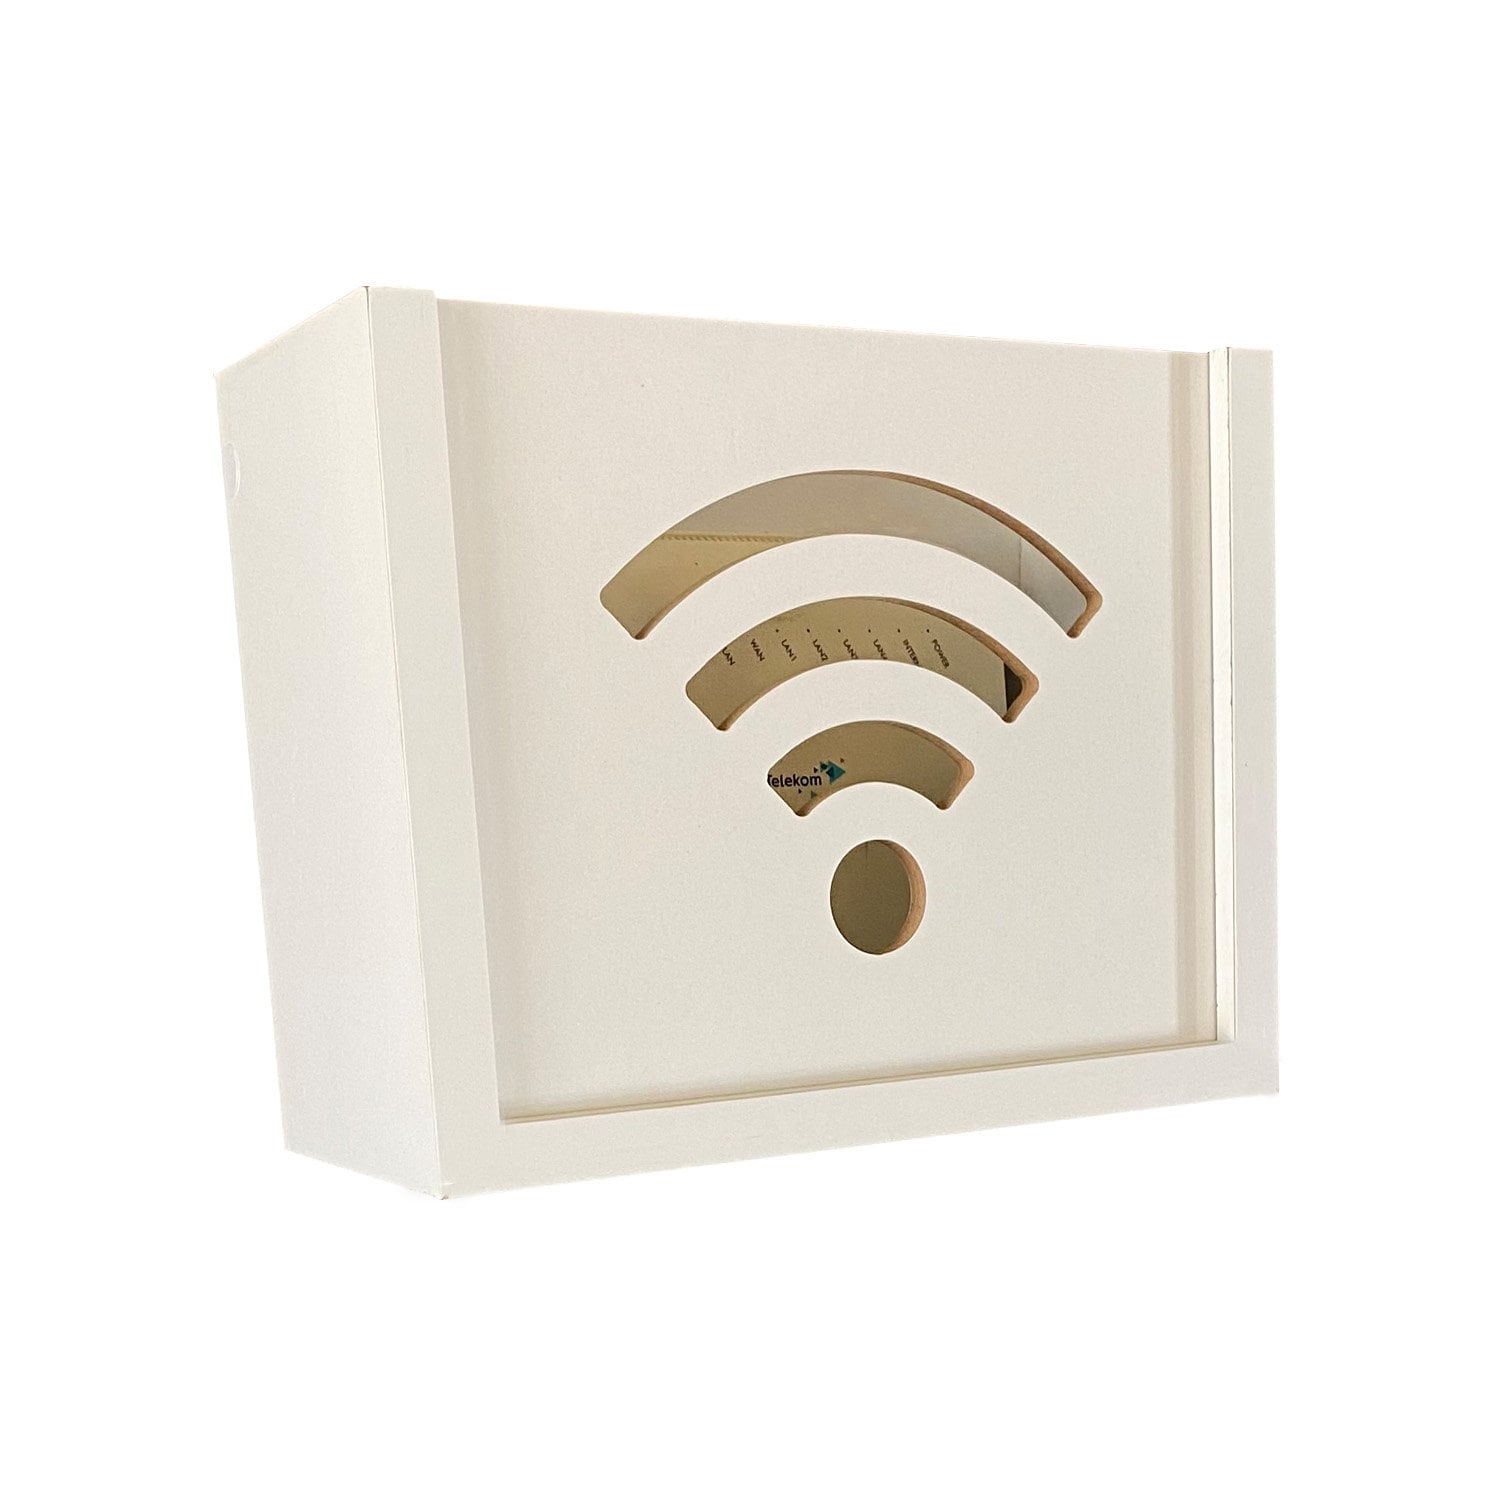 Wifi router storage box -  México